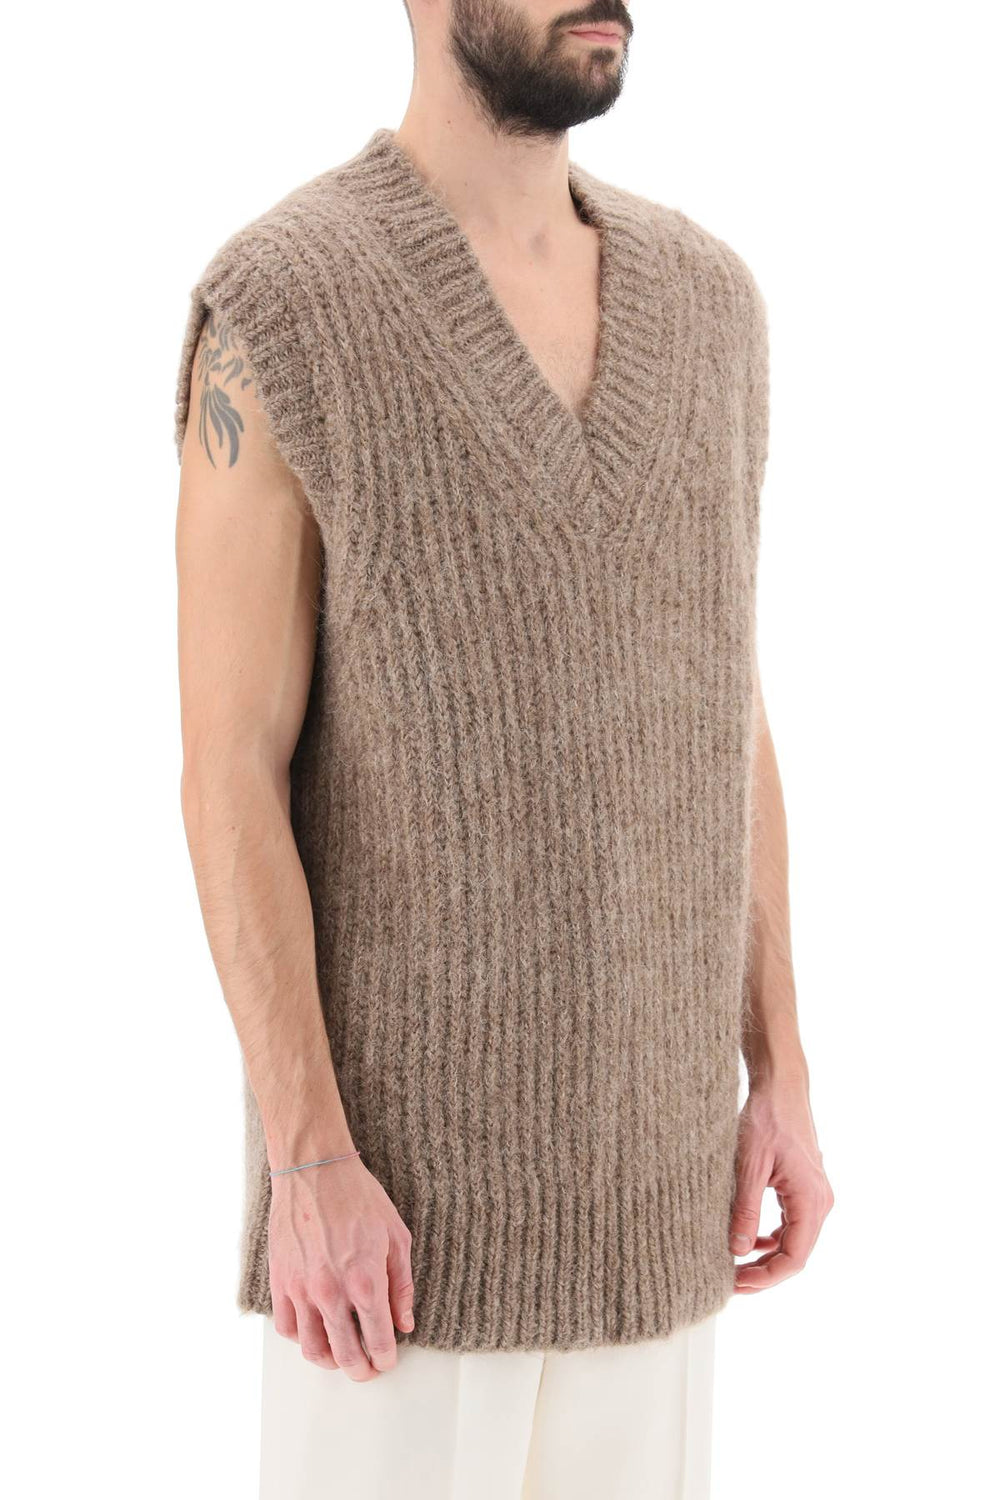 Ami paris ribbed alpaca sweater vest-1